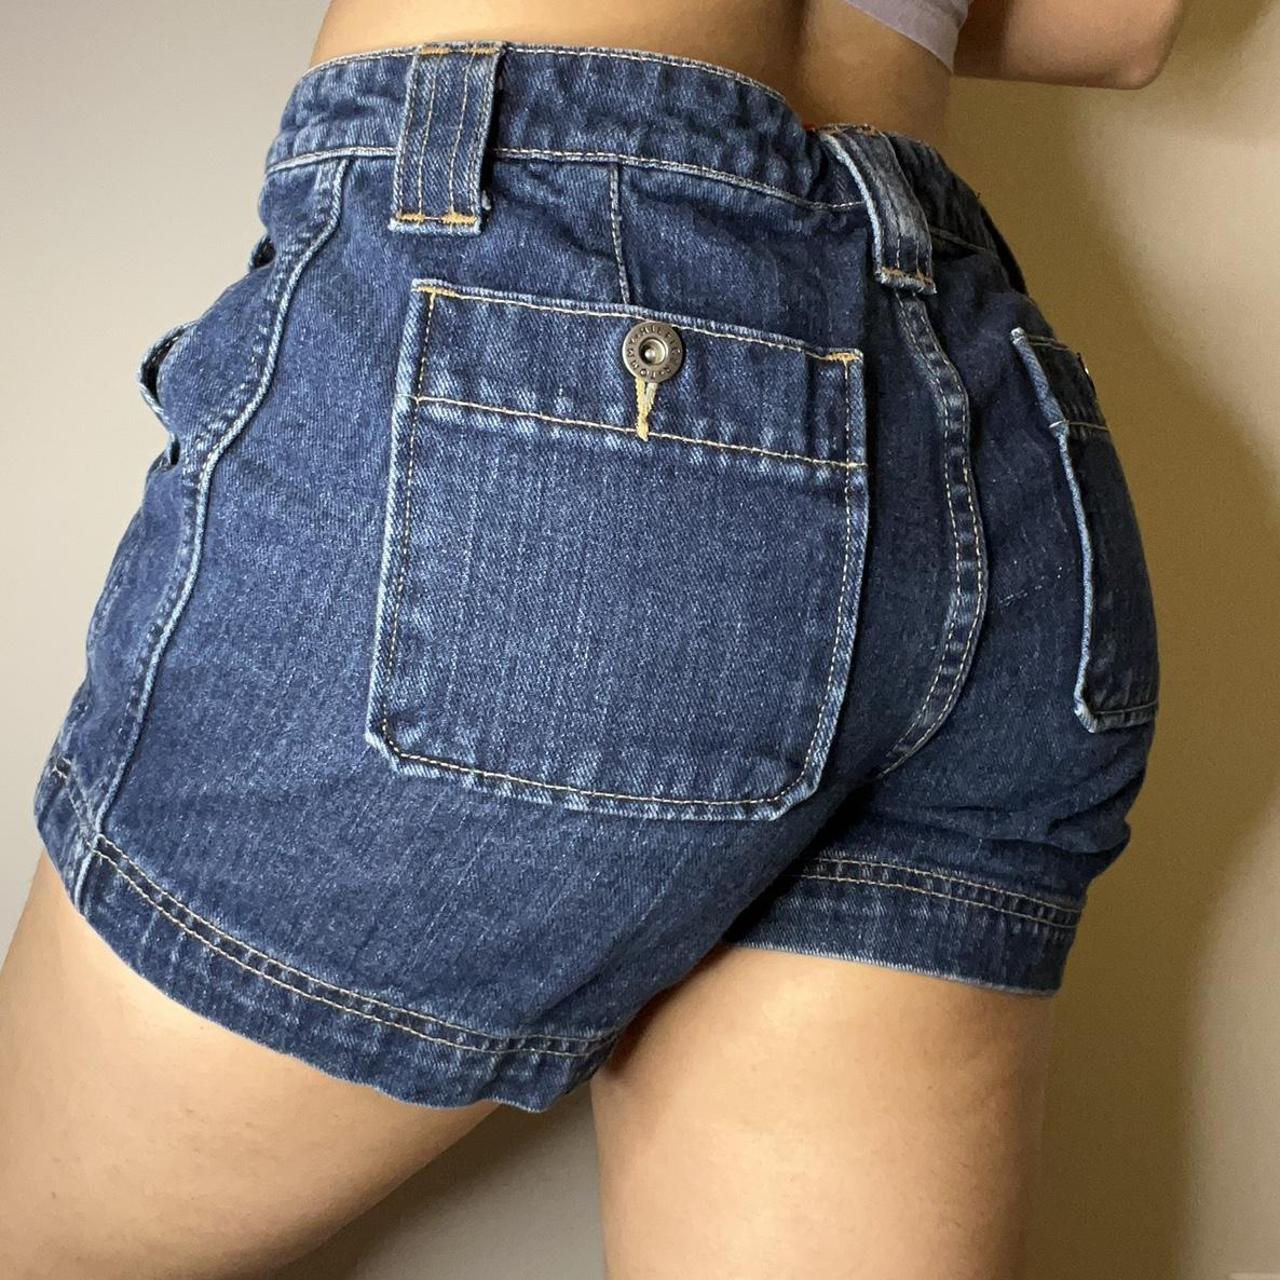 Hilfiger Denim Women's Shorts